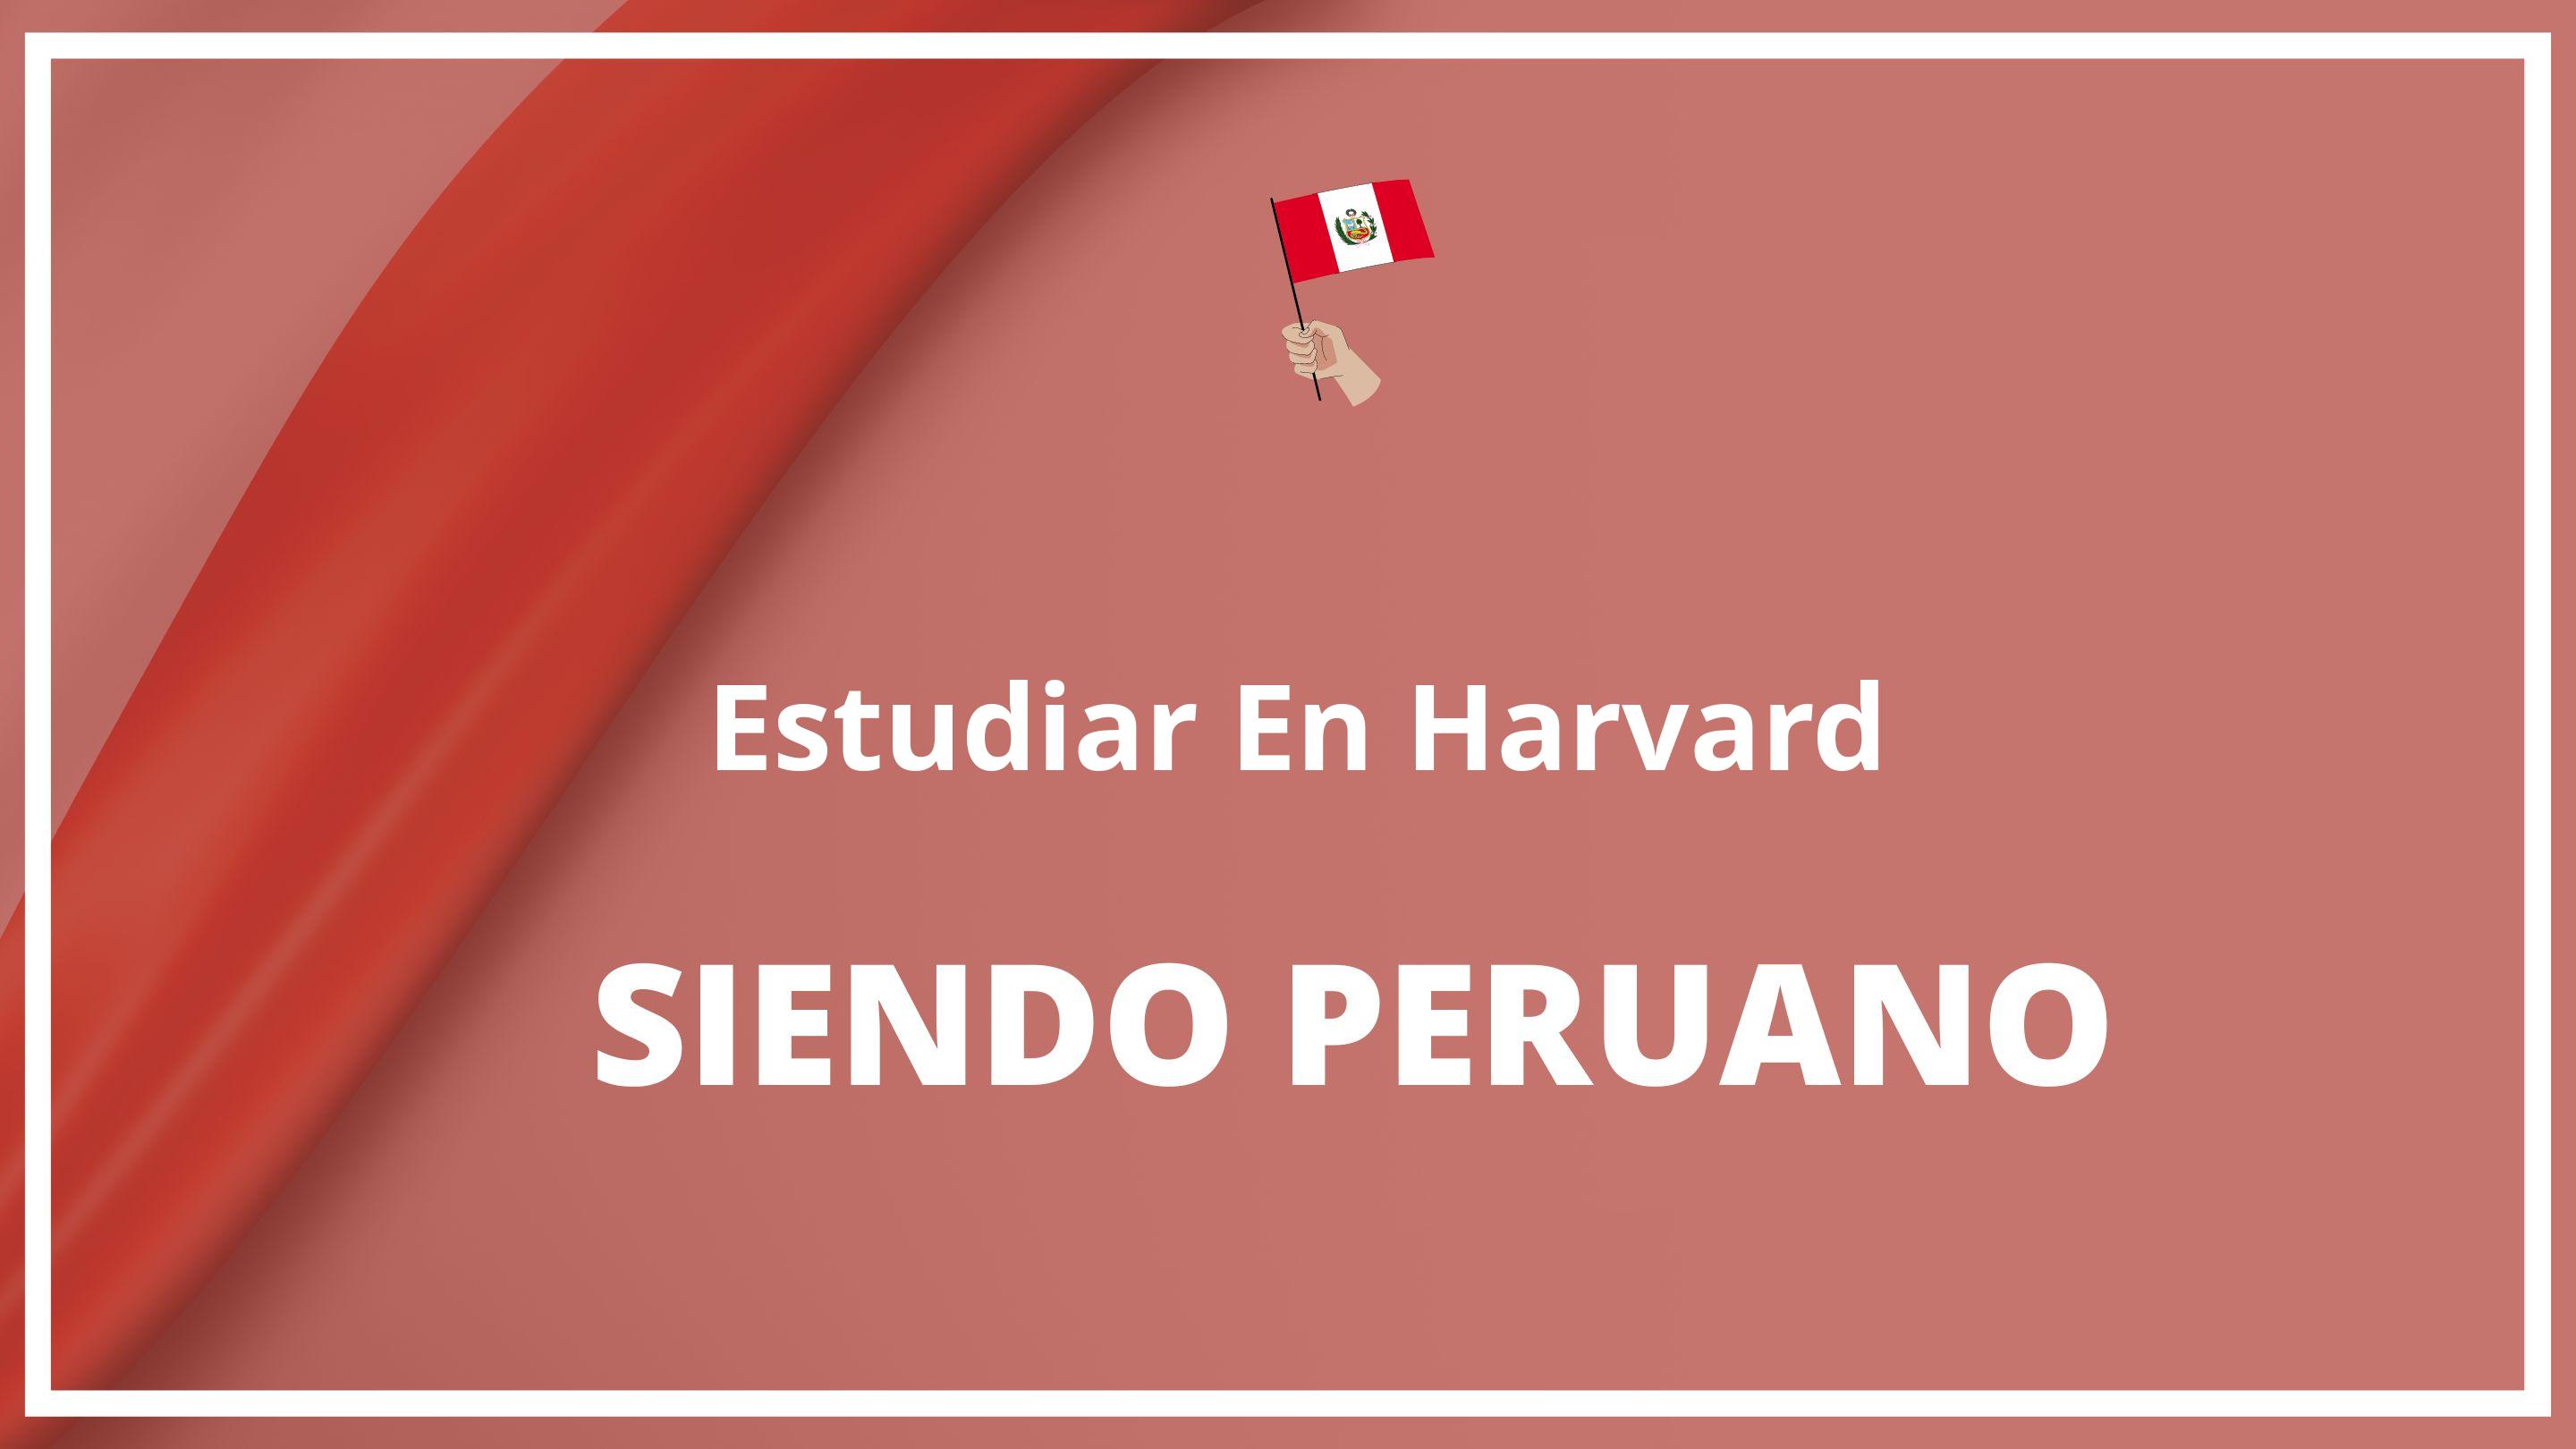 Como estudiar en harvard siendo peruano